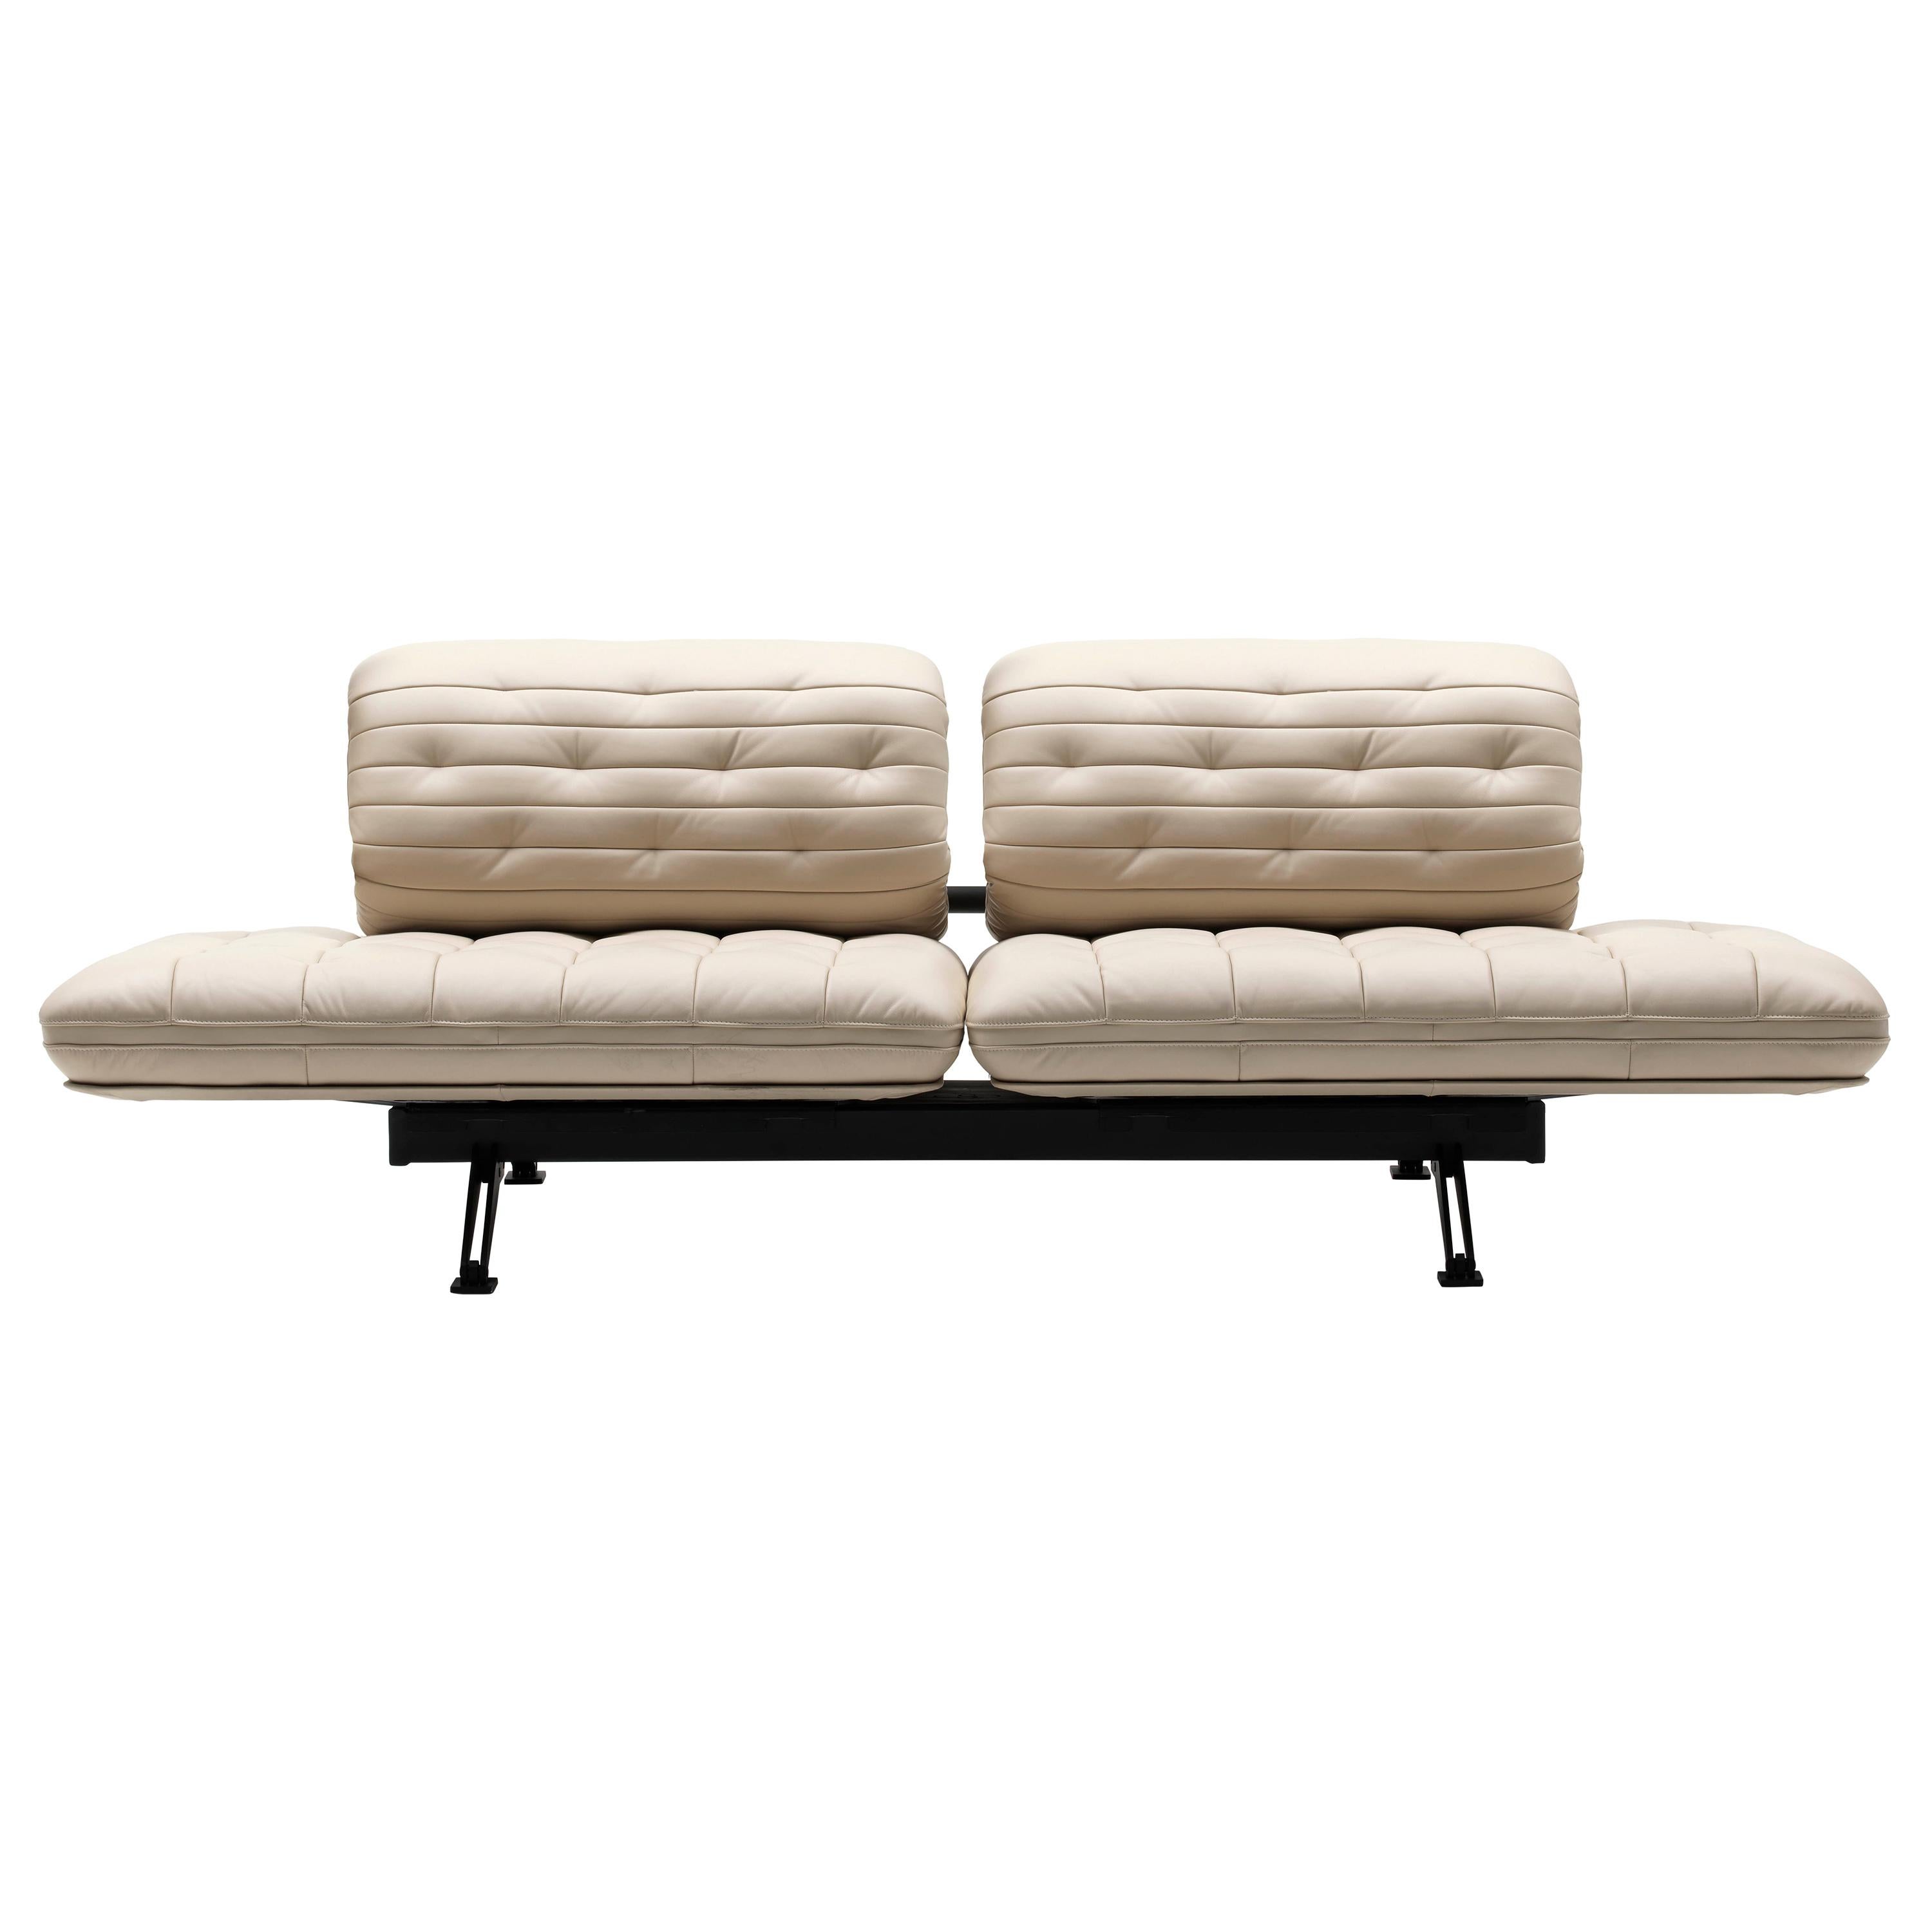 DS-490 Sofa by De Sede For Sale